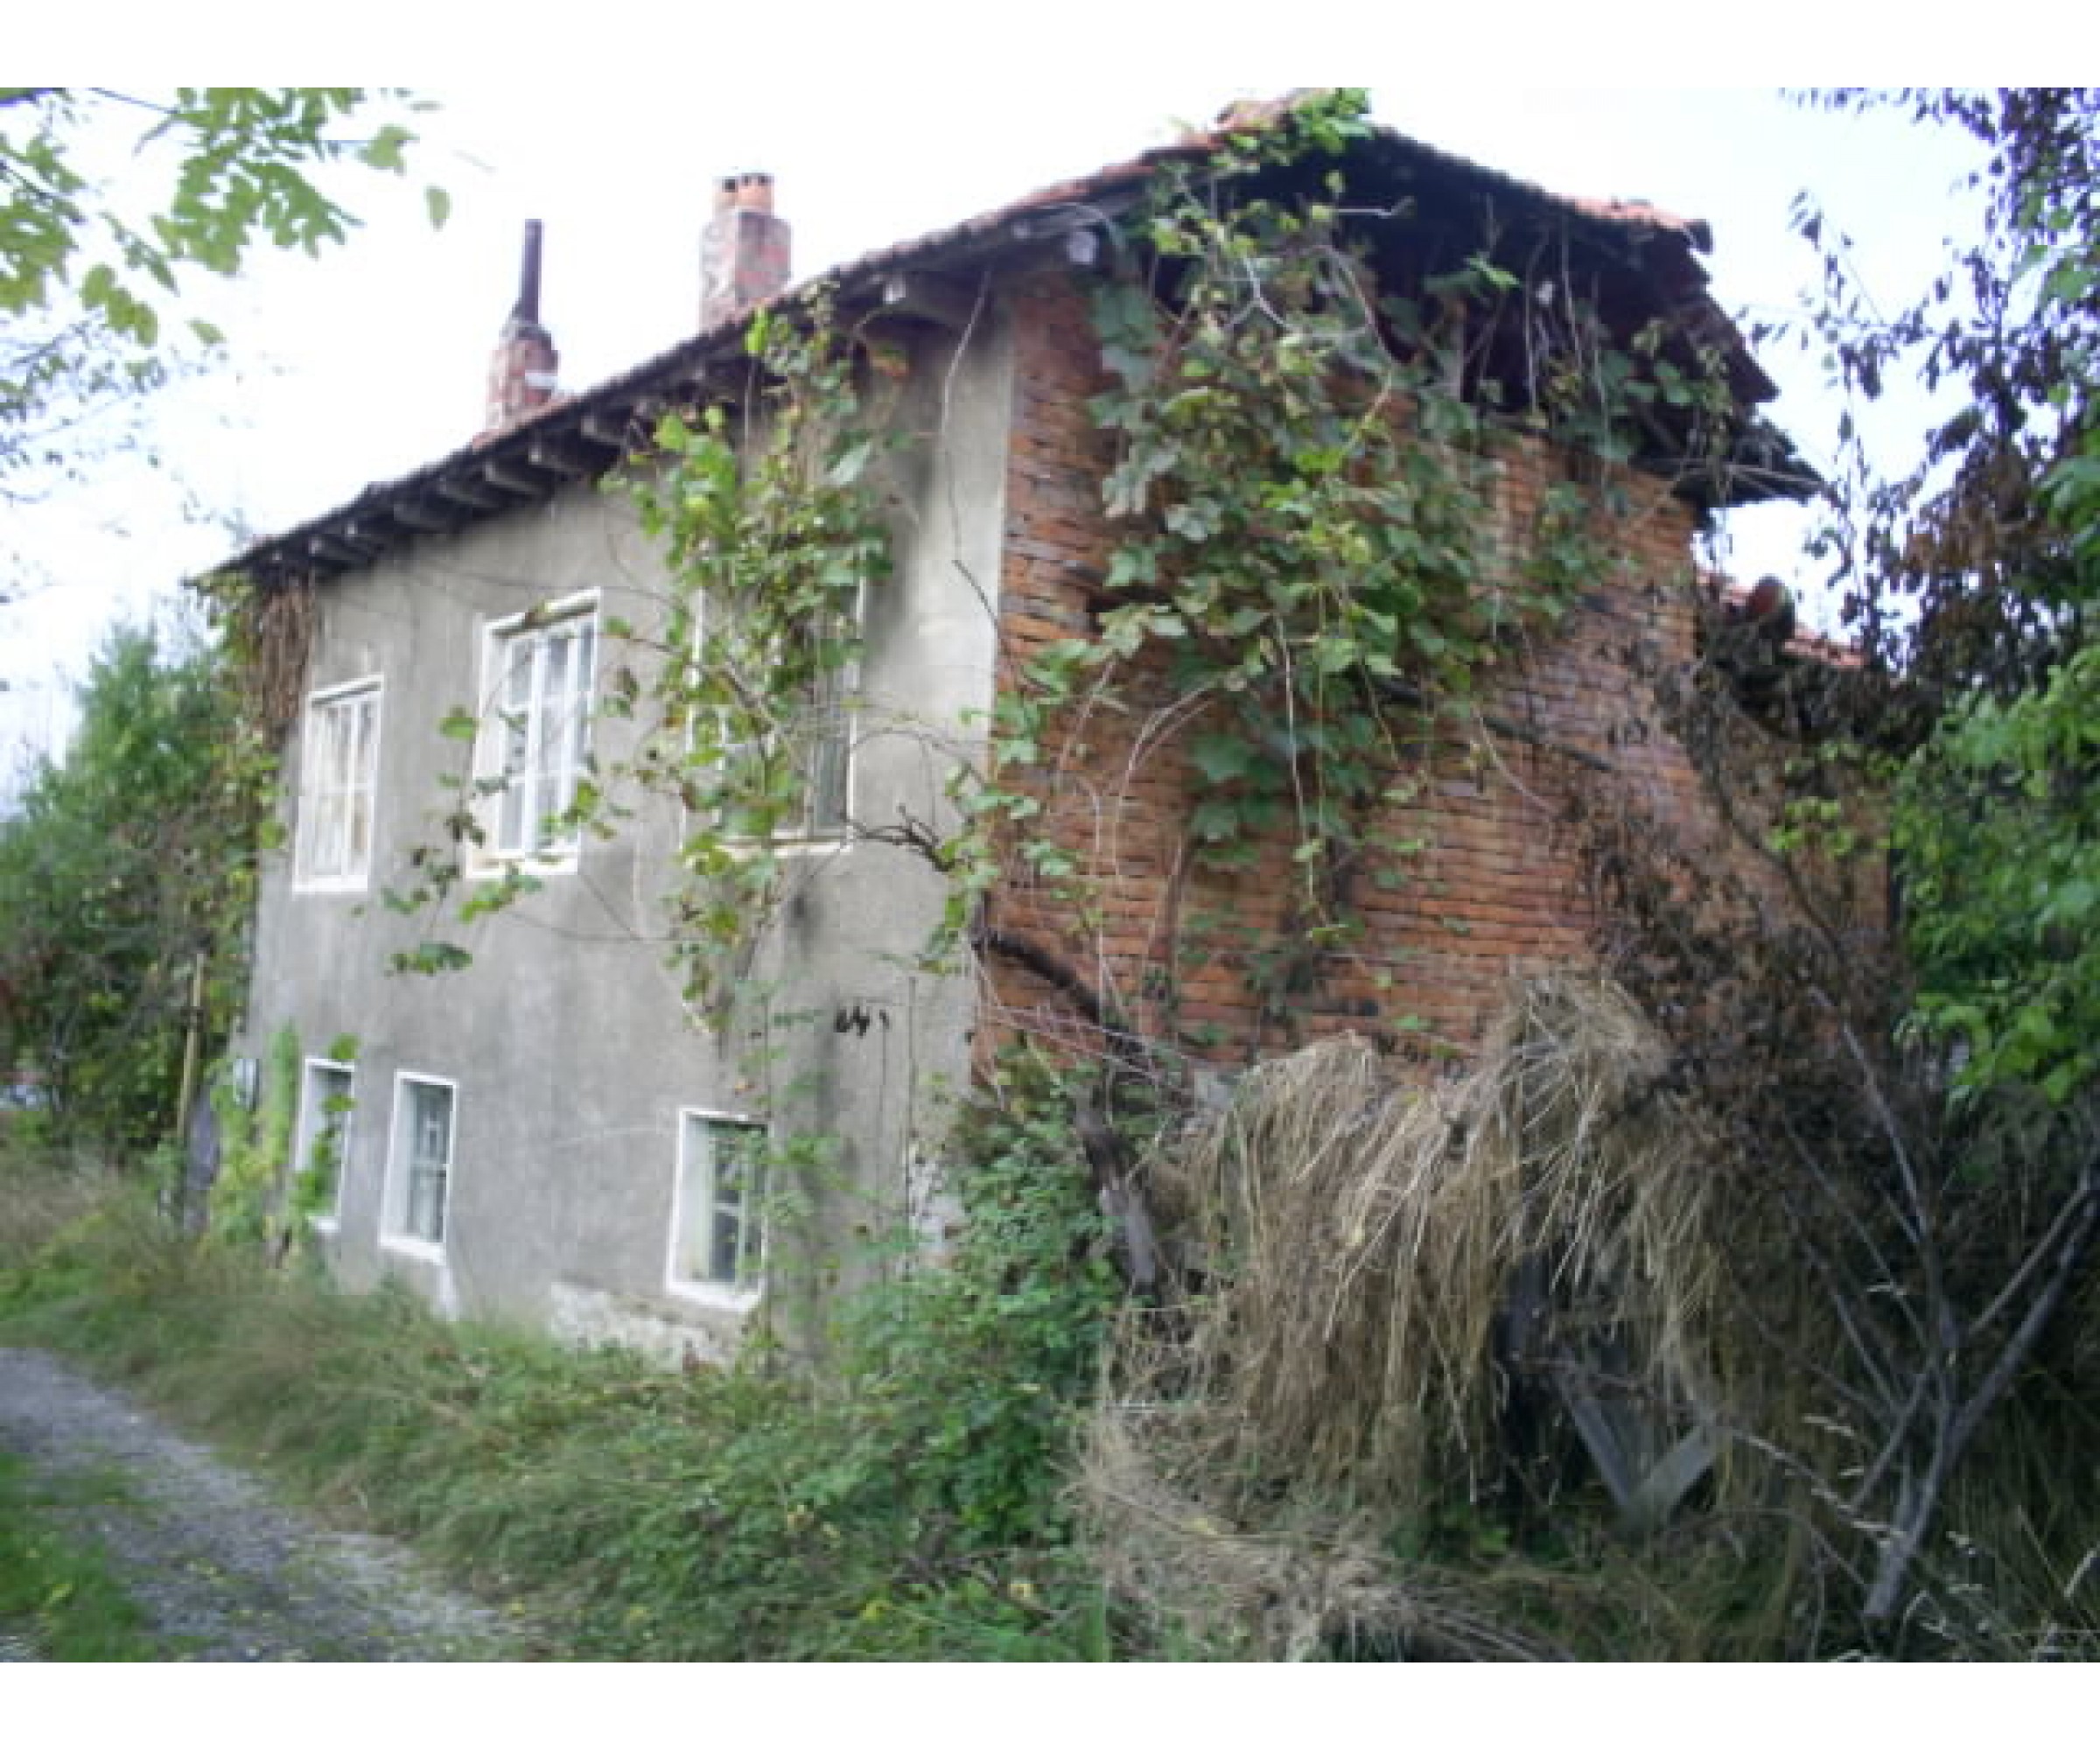 Two-storey house in the village of Drashkova Polyana